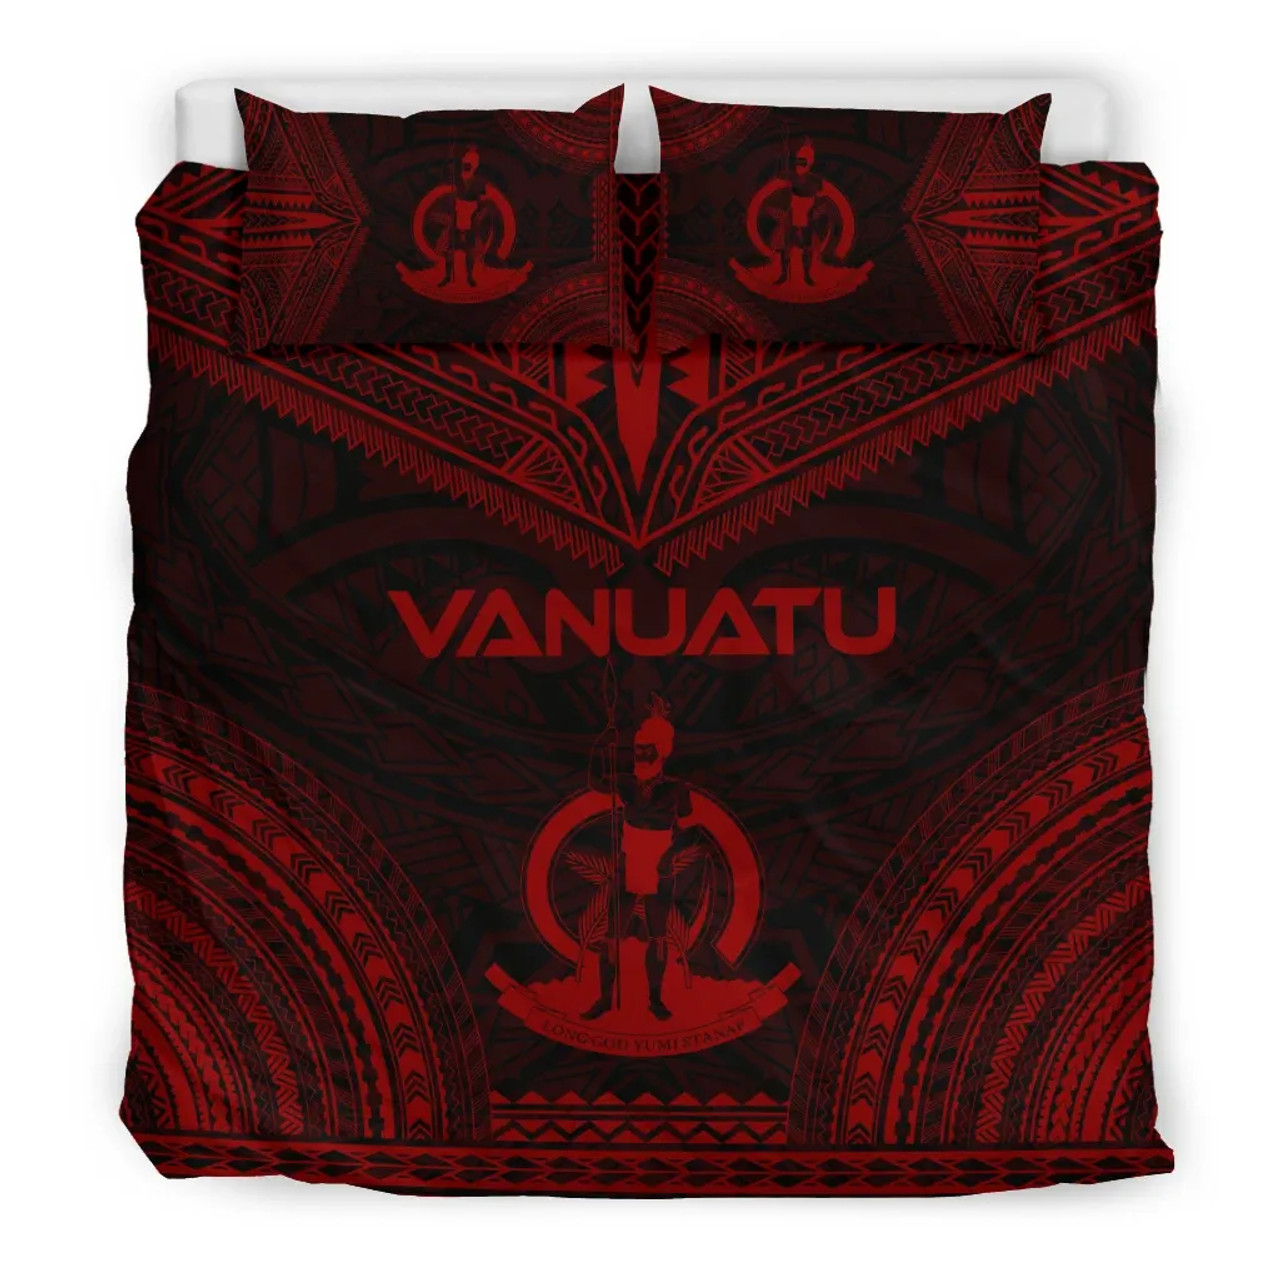 Vanuatu Polynesian Chief Duvet Cover Set - Red Version 3